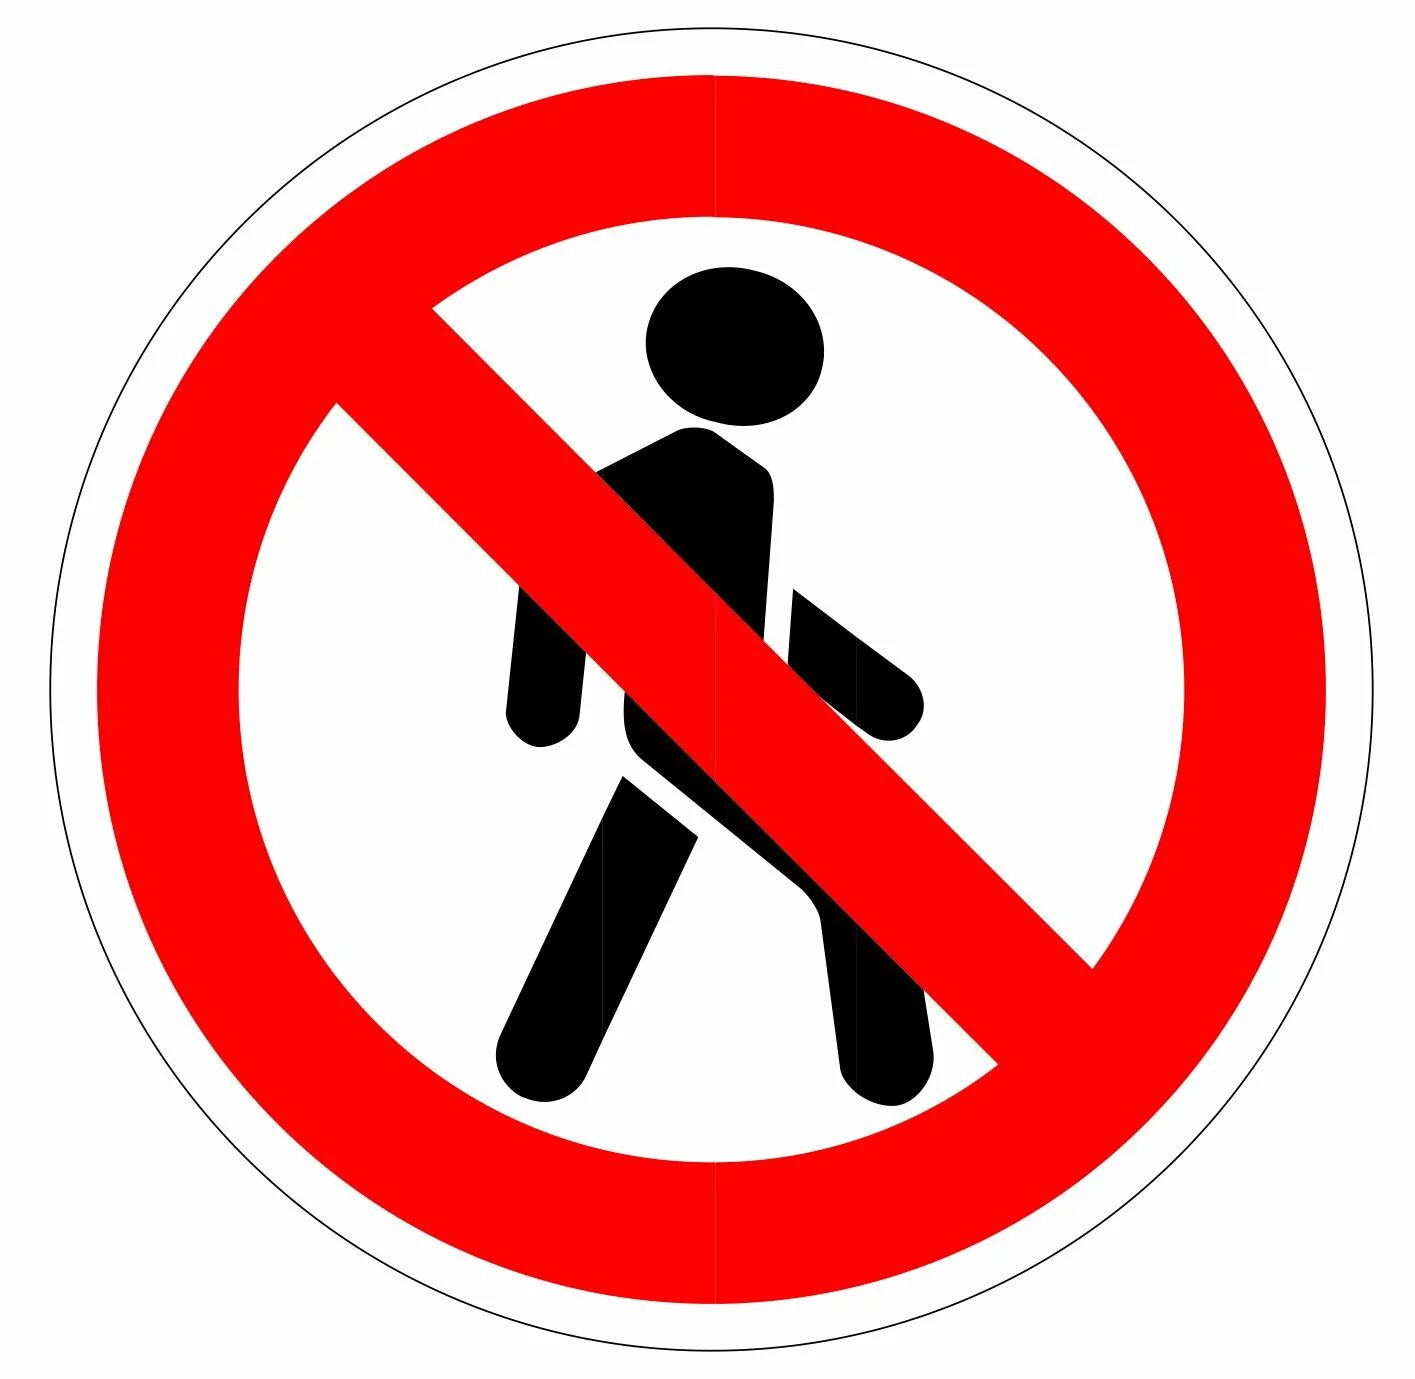 Движение пешеходов. Дорожный знак 3.10. Запрещающие знаки дорожного движения движение пешеходов запрещено. Знак дорожный, 3.10 «движение пешеходов запрещено»с желтой окантовкой. Знаки дорожного движения для детей движение пешеходов запрещено.